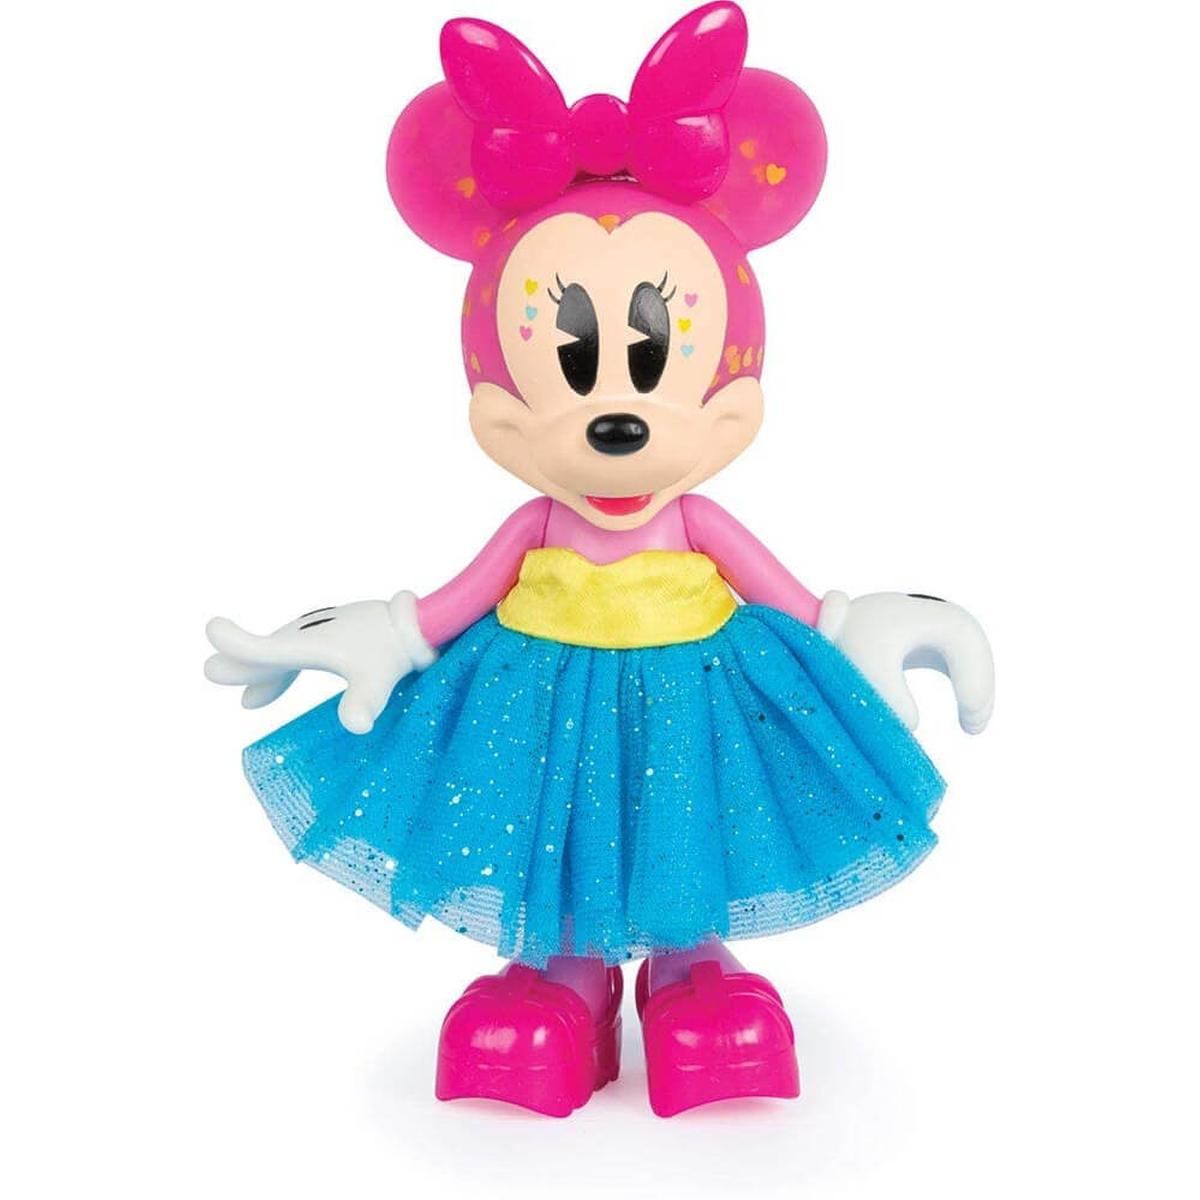 Minnie Mouse - Boneca Minnie Fashion Fluffy Flamingo | MINNIE MOUSE. CAT 54  | Loja de brinquedos e videojogos Online Toysrus